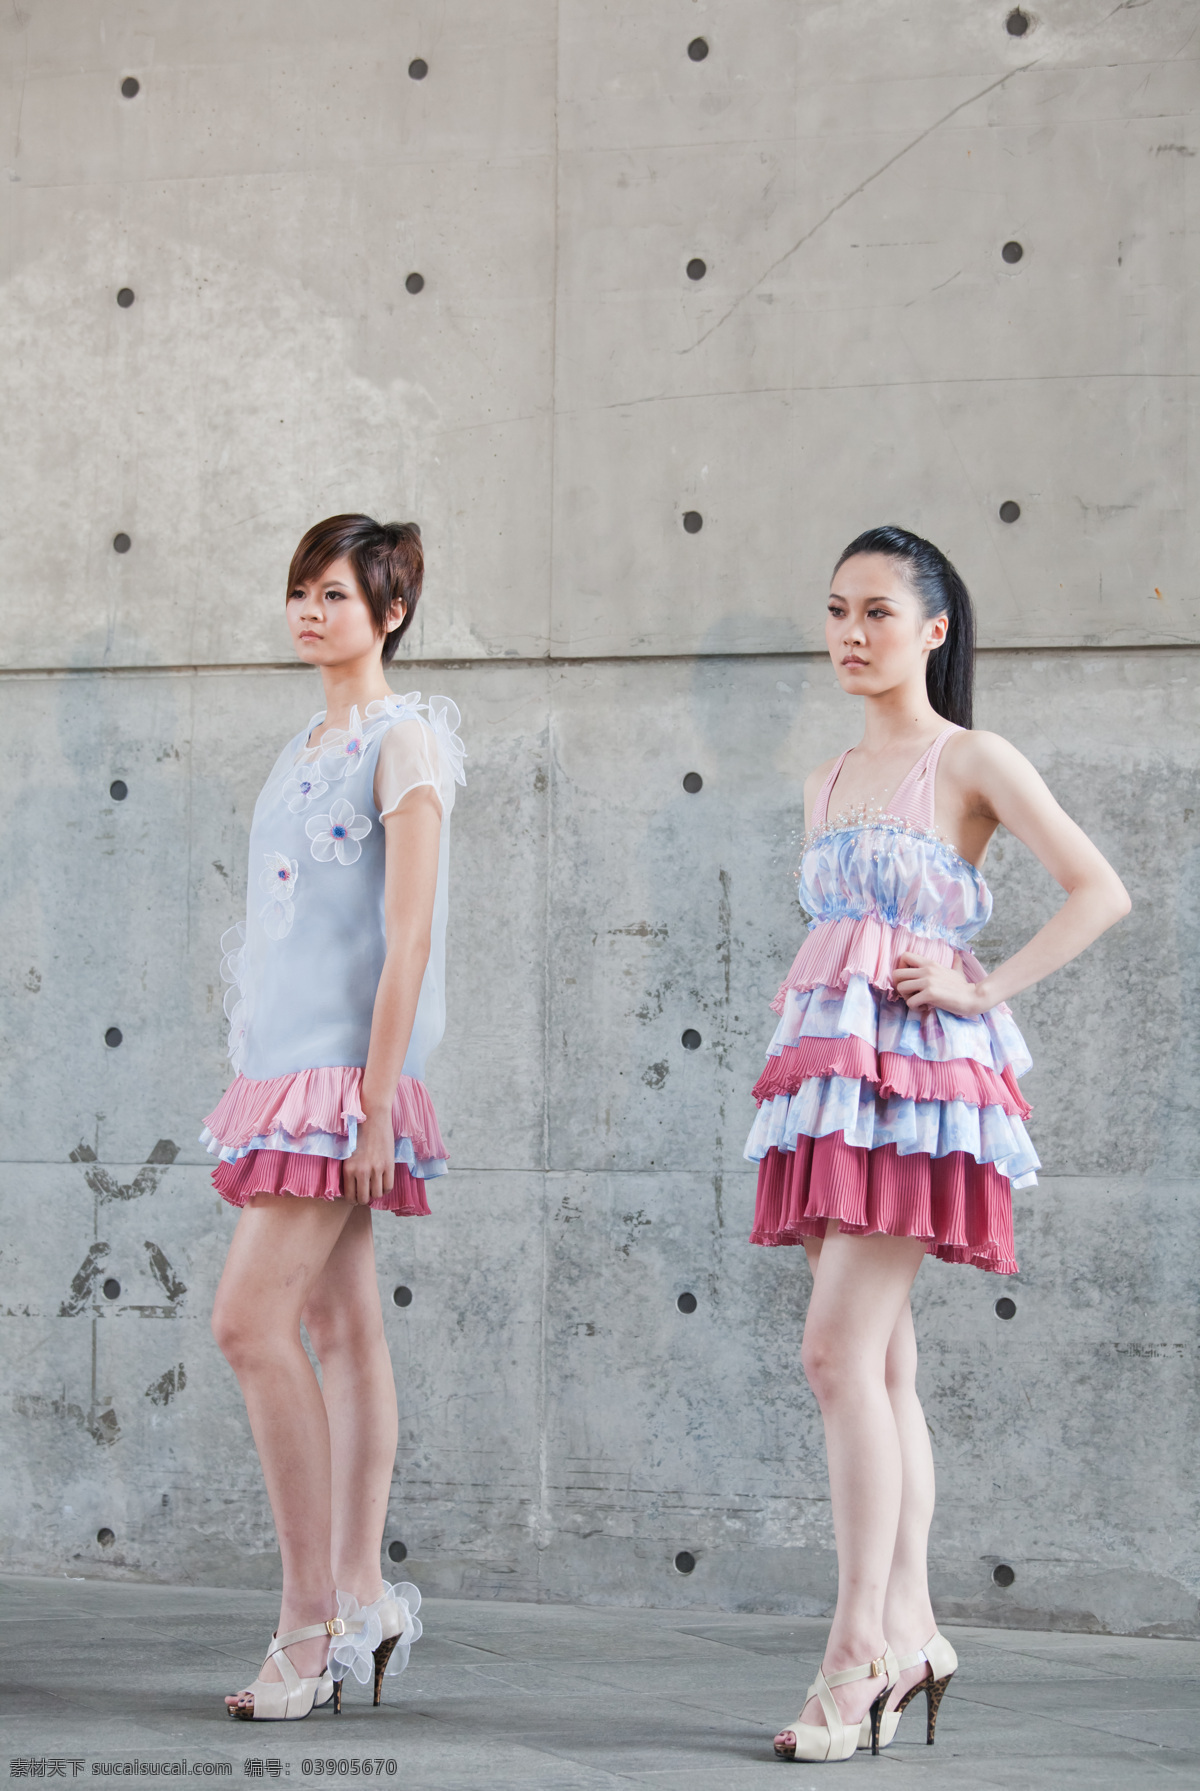 人物摄影 人物图库 台湾实践大学 大学生 模特 大学生模特 台湾 服装设计 展 其他服装素材